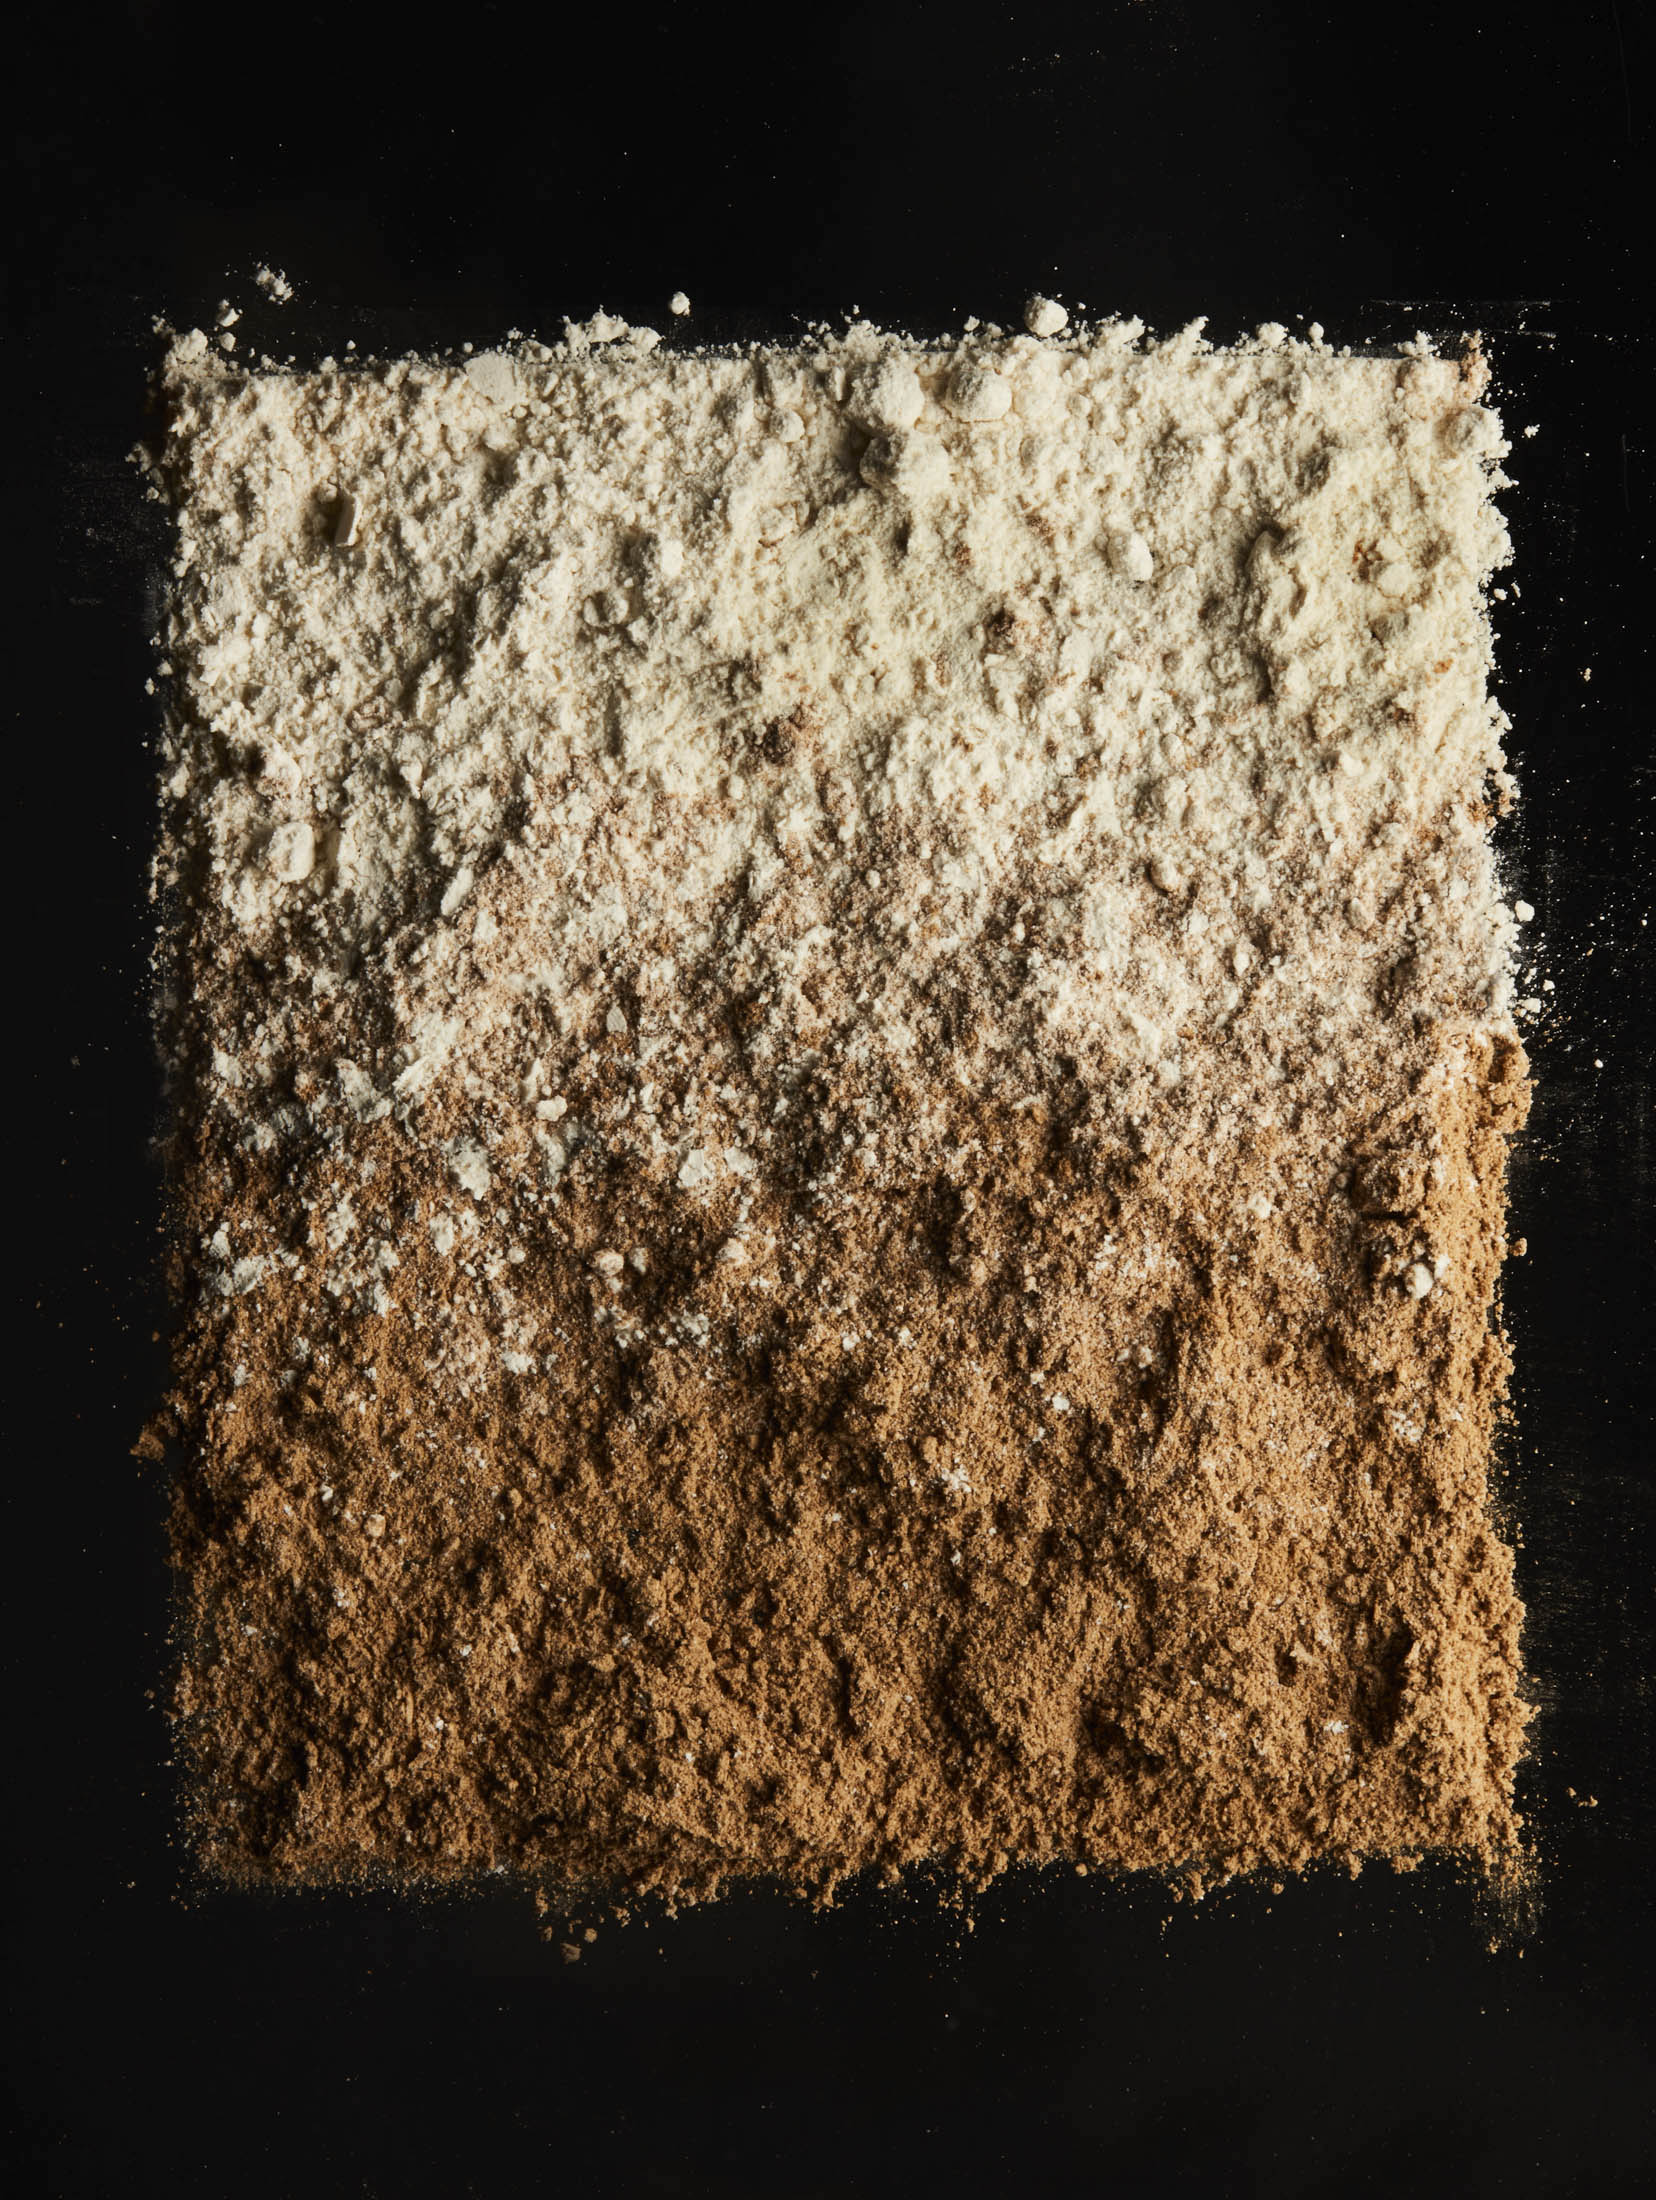 A gradation of grano arso.